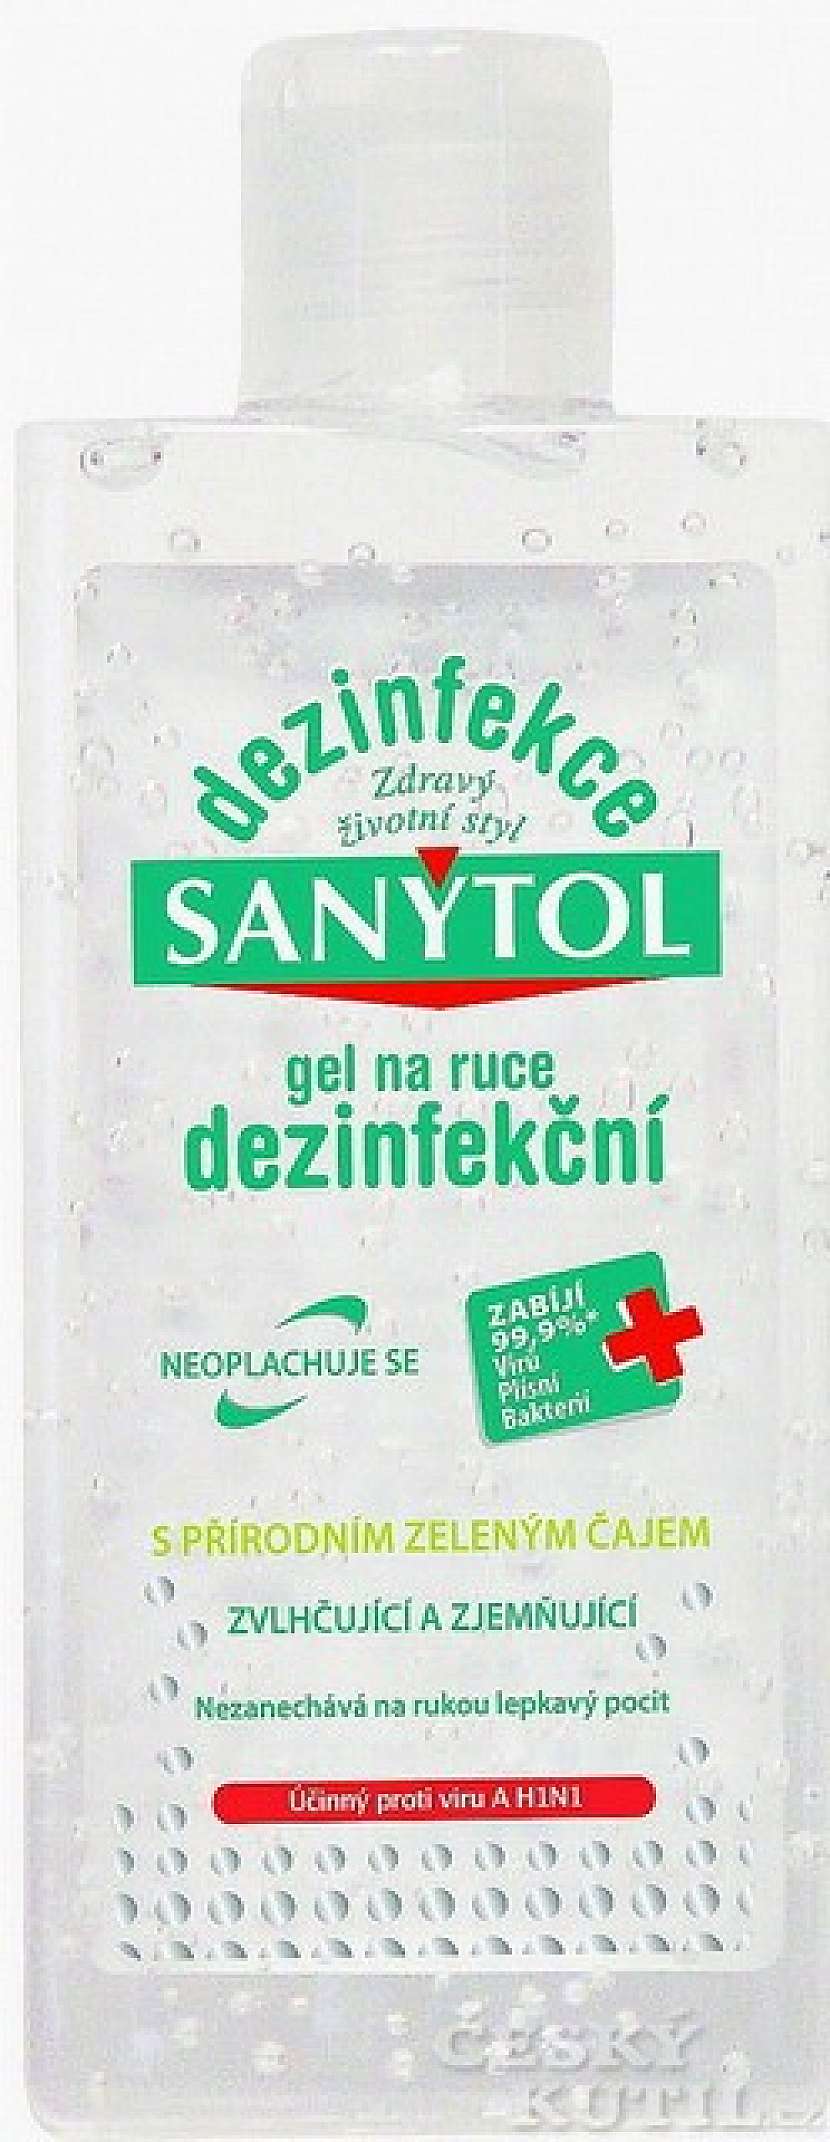 Koupelna v kapse aneb vyzkoušeli jsme za vás Sanytol dezinfekční gel